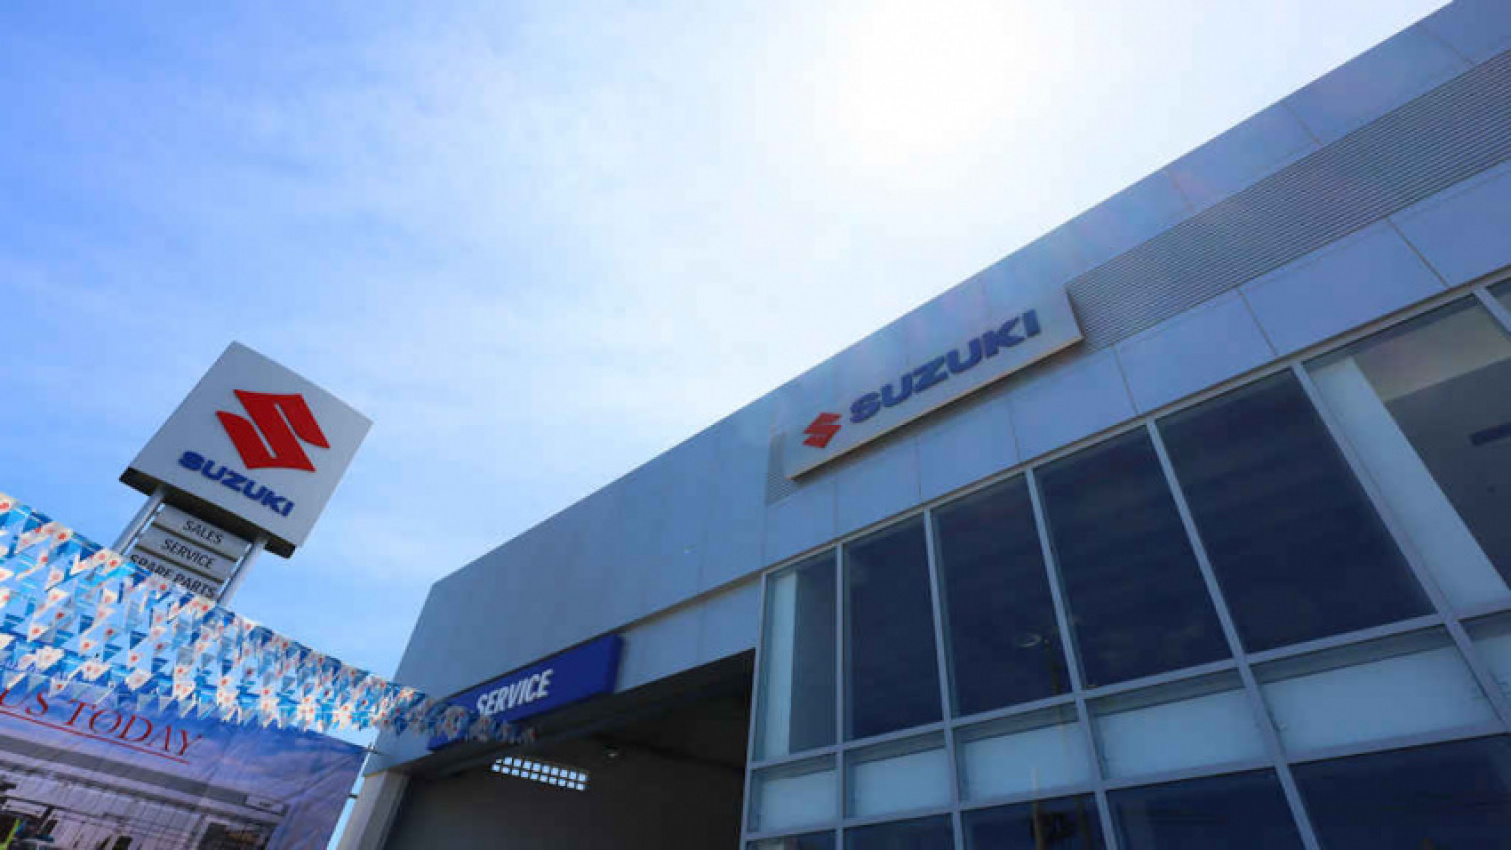 autos, cars, suzuki, dealerships, news, suzuki corporate, suzuki philippines continues network expansion with new 3s dealership in kawit, cavite